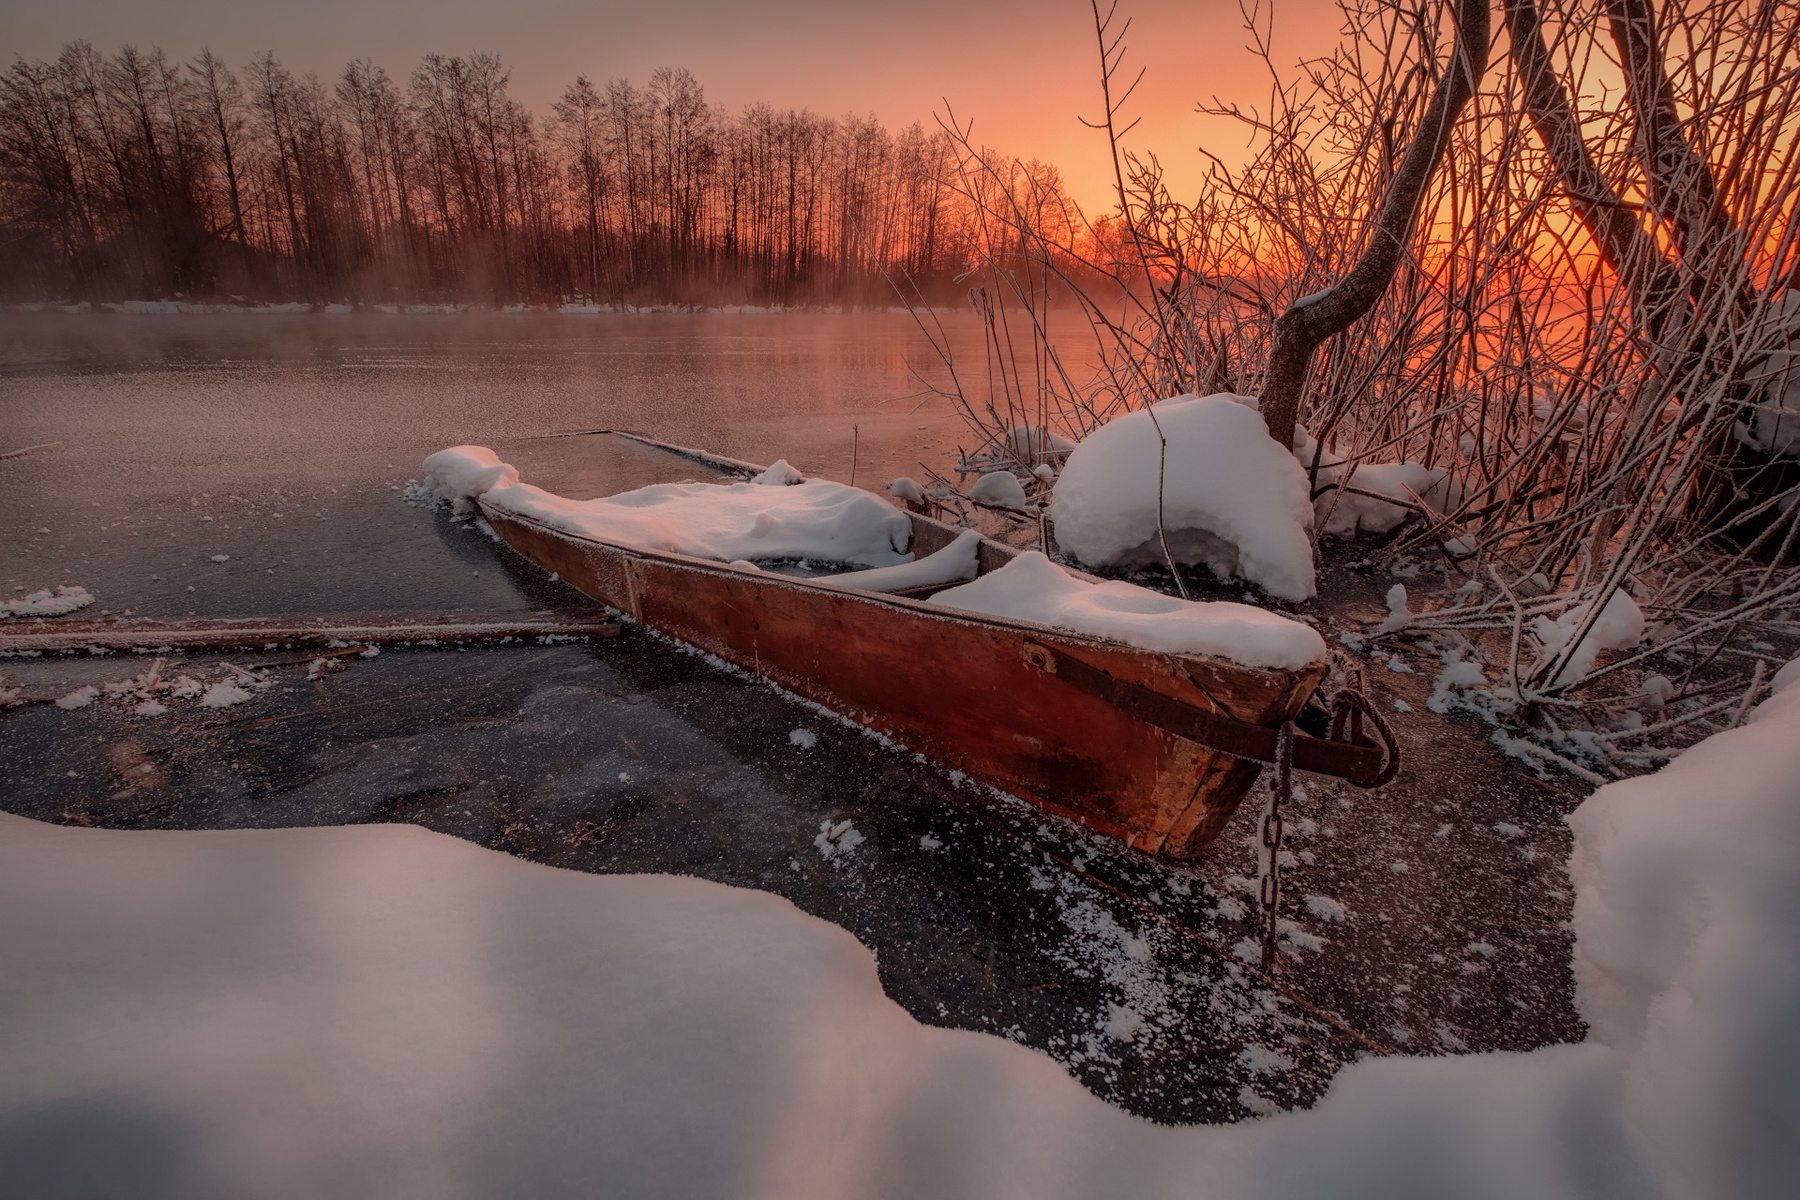 Брошенная лодка пейзаж зима пруд озеро снег утро рассвет восход мороз холод лодка шатура